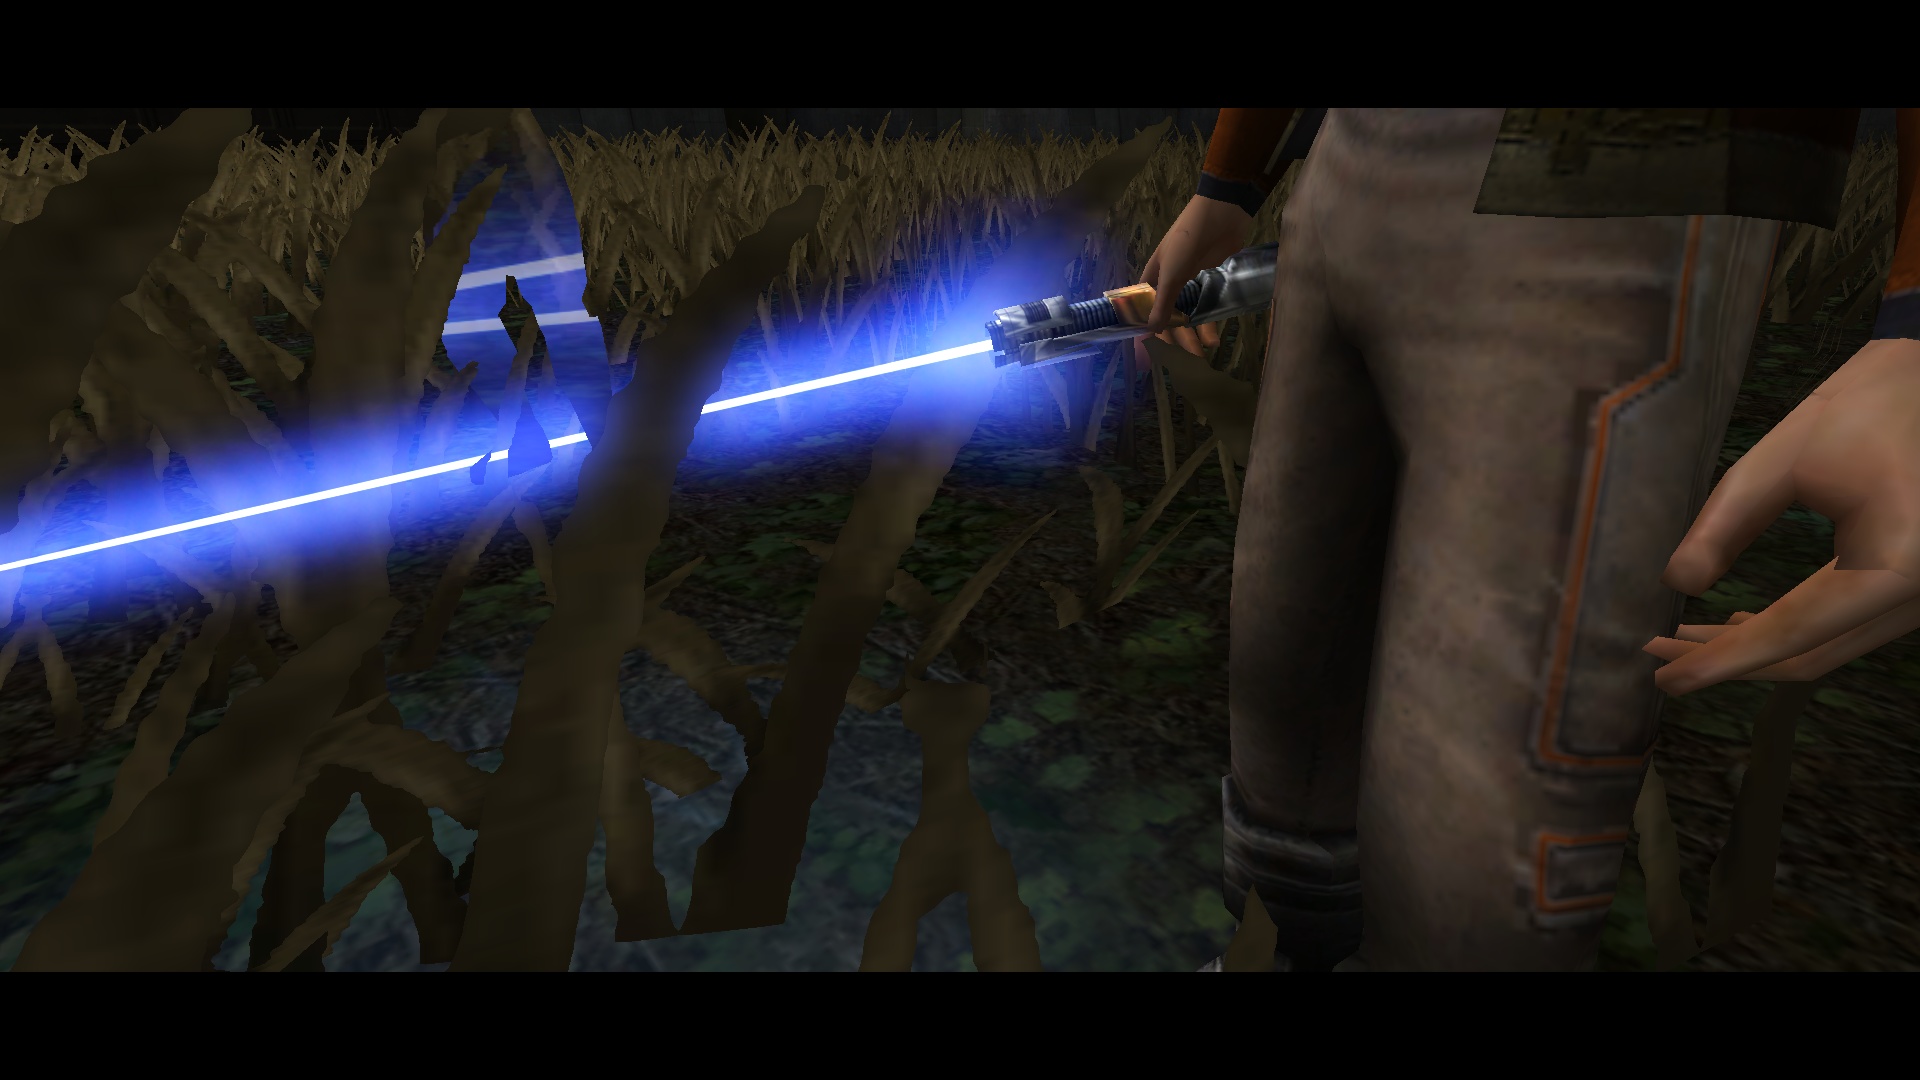 More information about "Star Wars Rebels Lightsaber Blades"